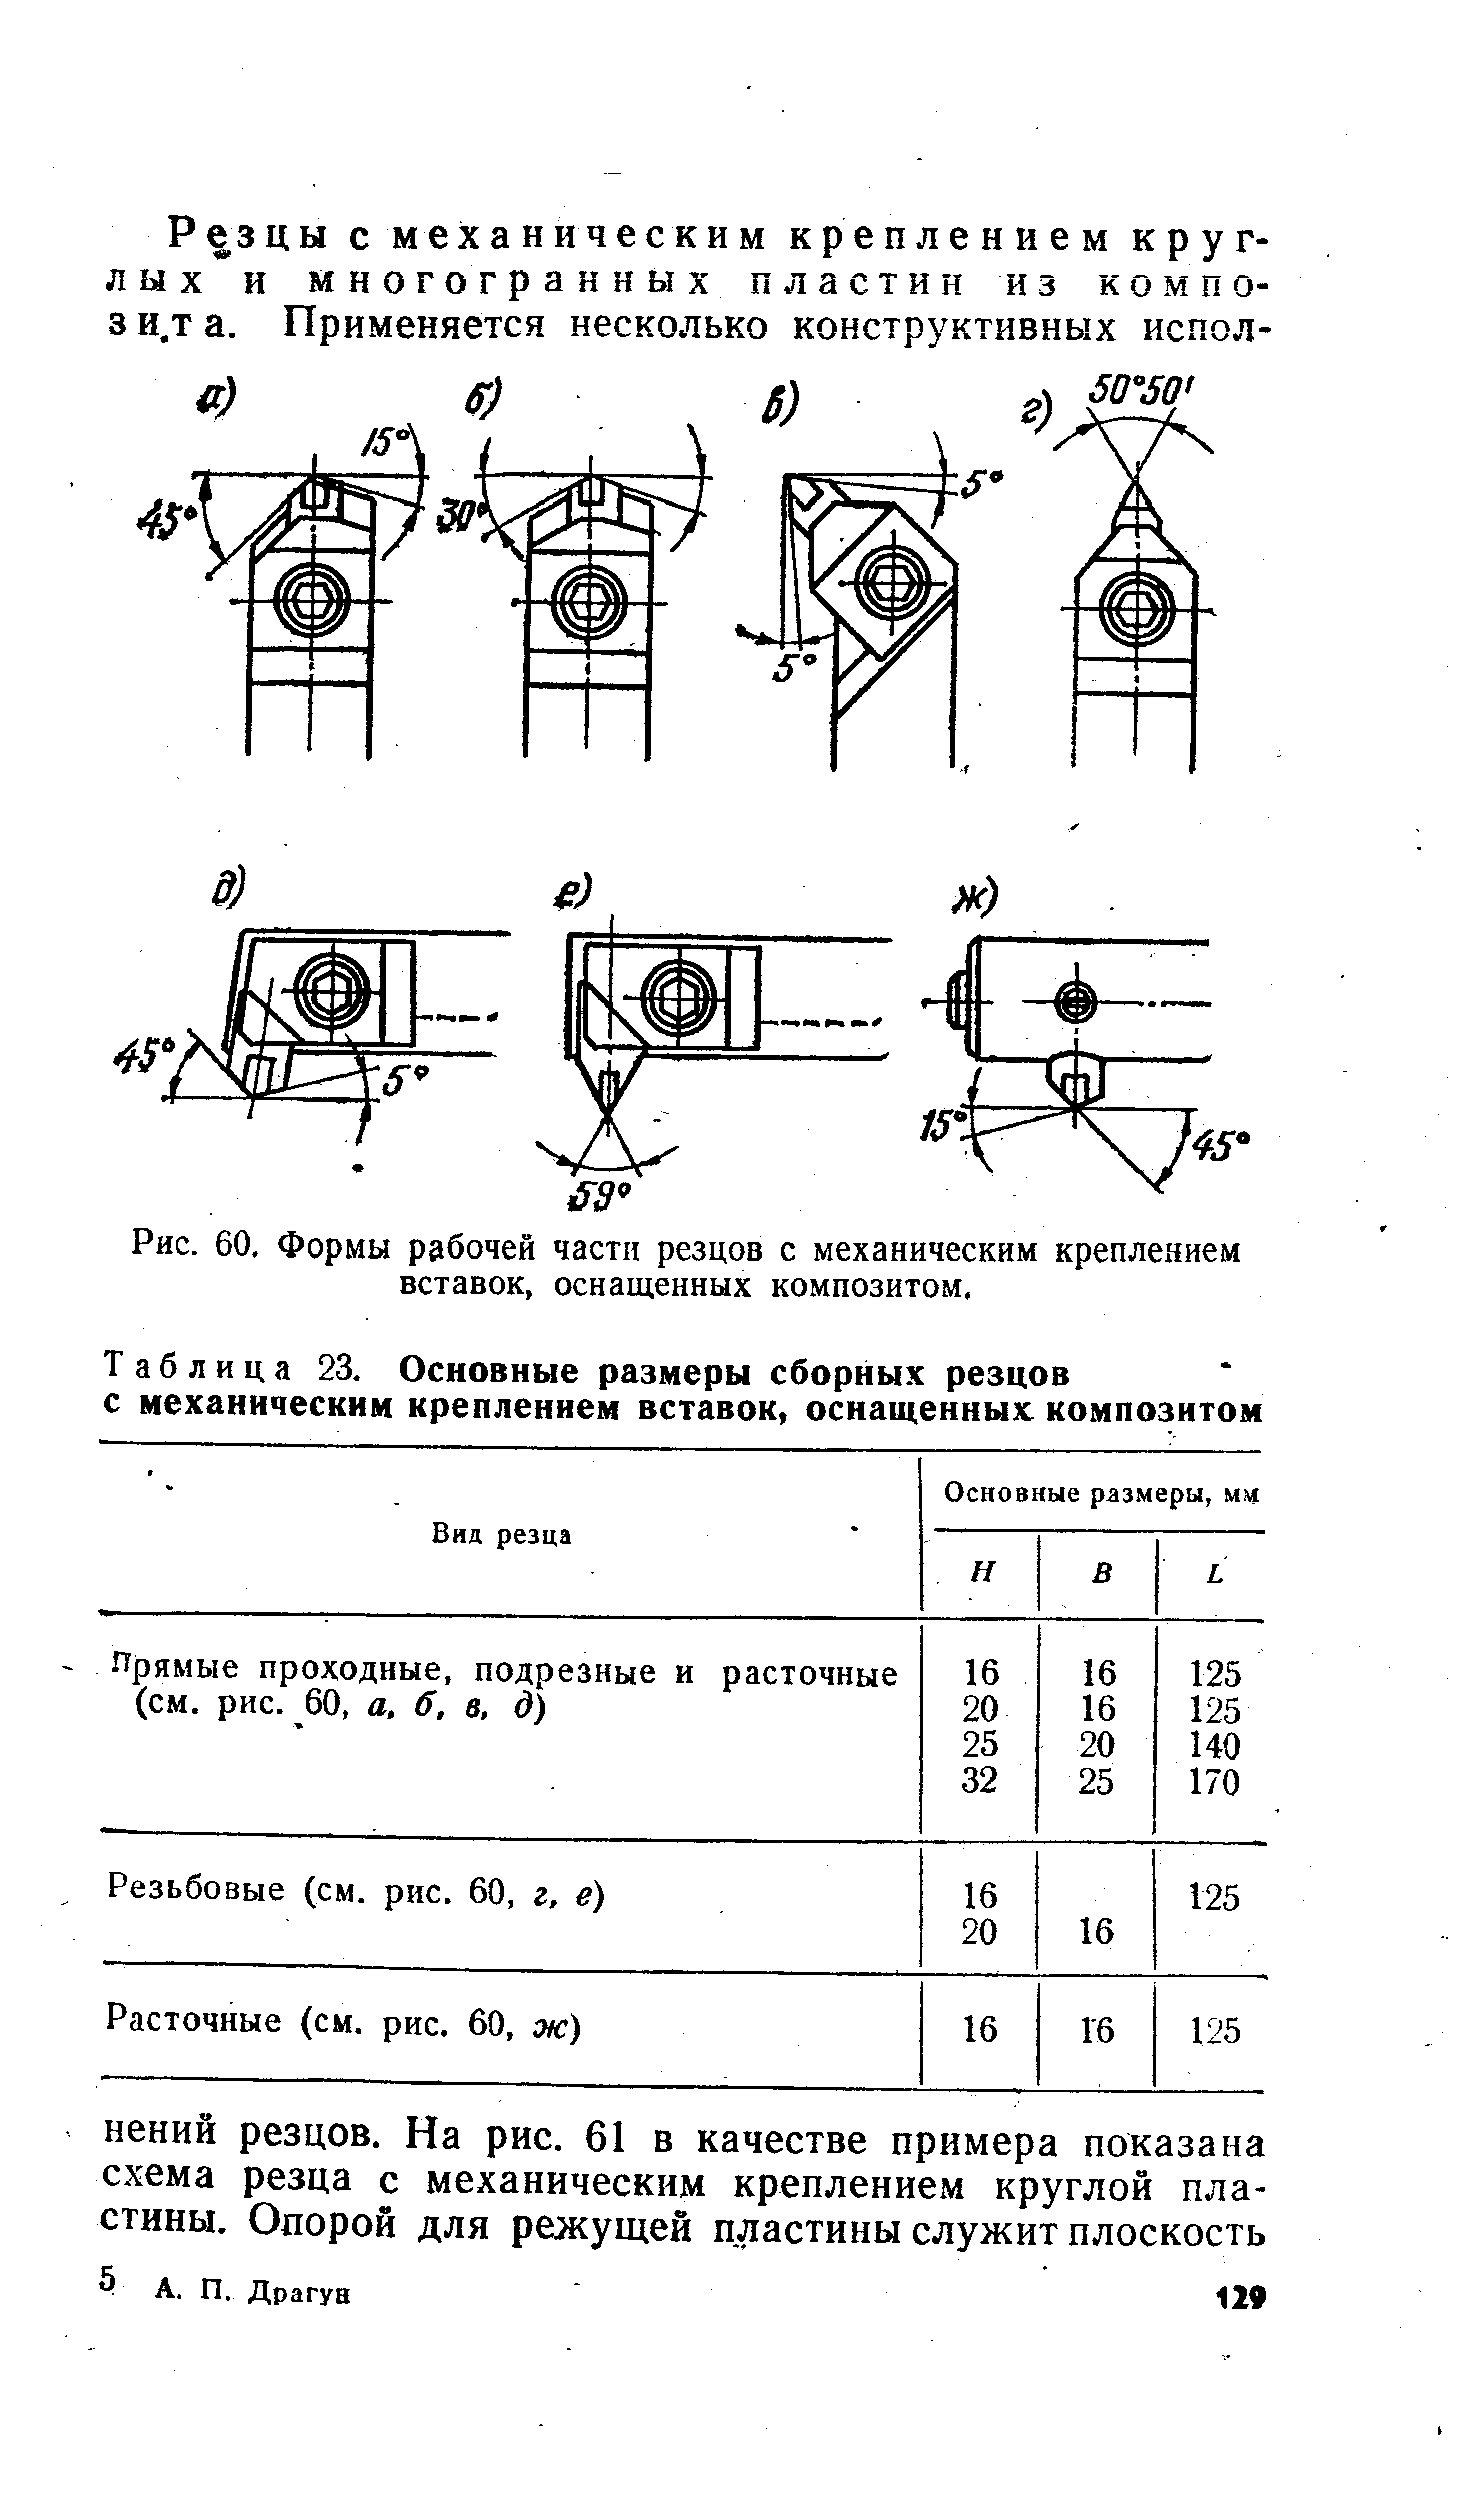 Таблица 23. Основные размеры сборных резцов с механическим креплением вставок, оснащенных композитом
